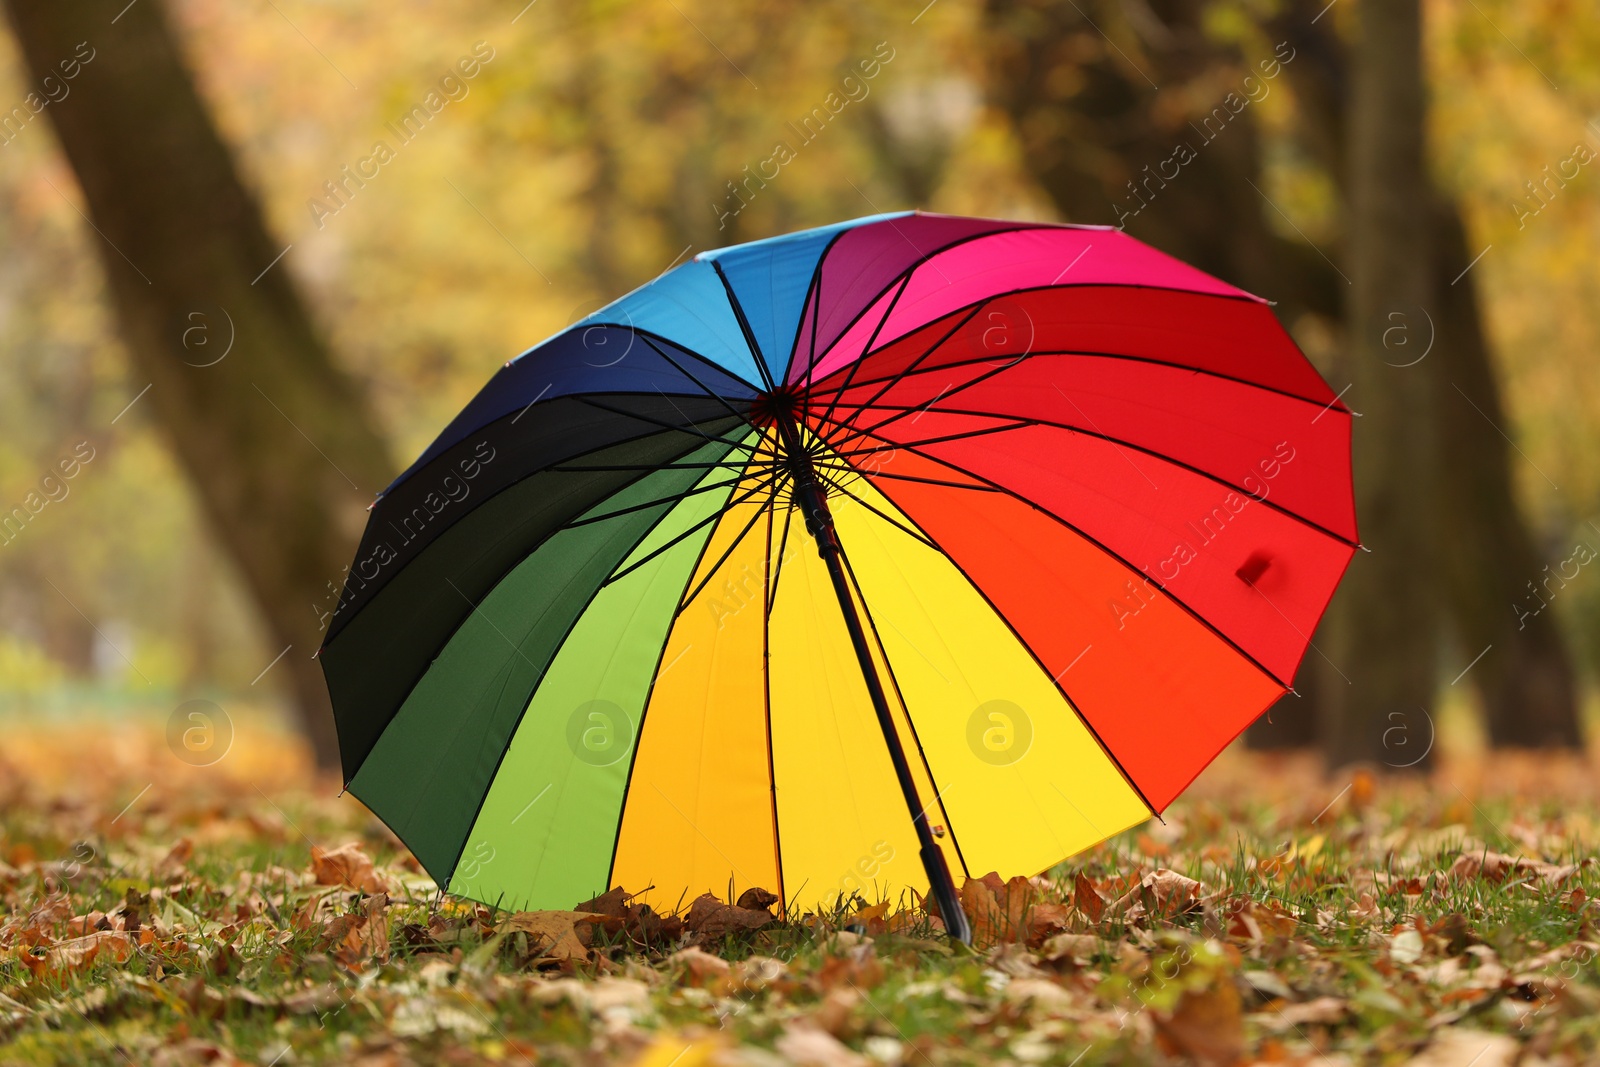 Photo of Open rainbow umbrella on fallen leaves in autumn park